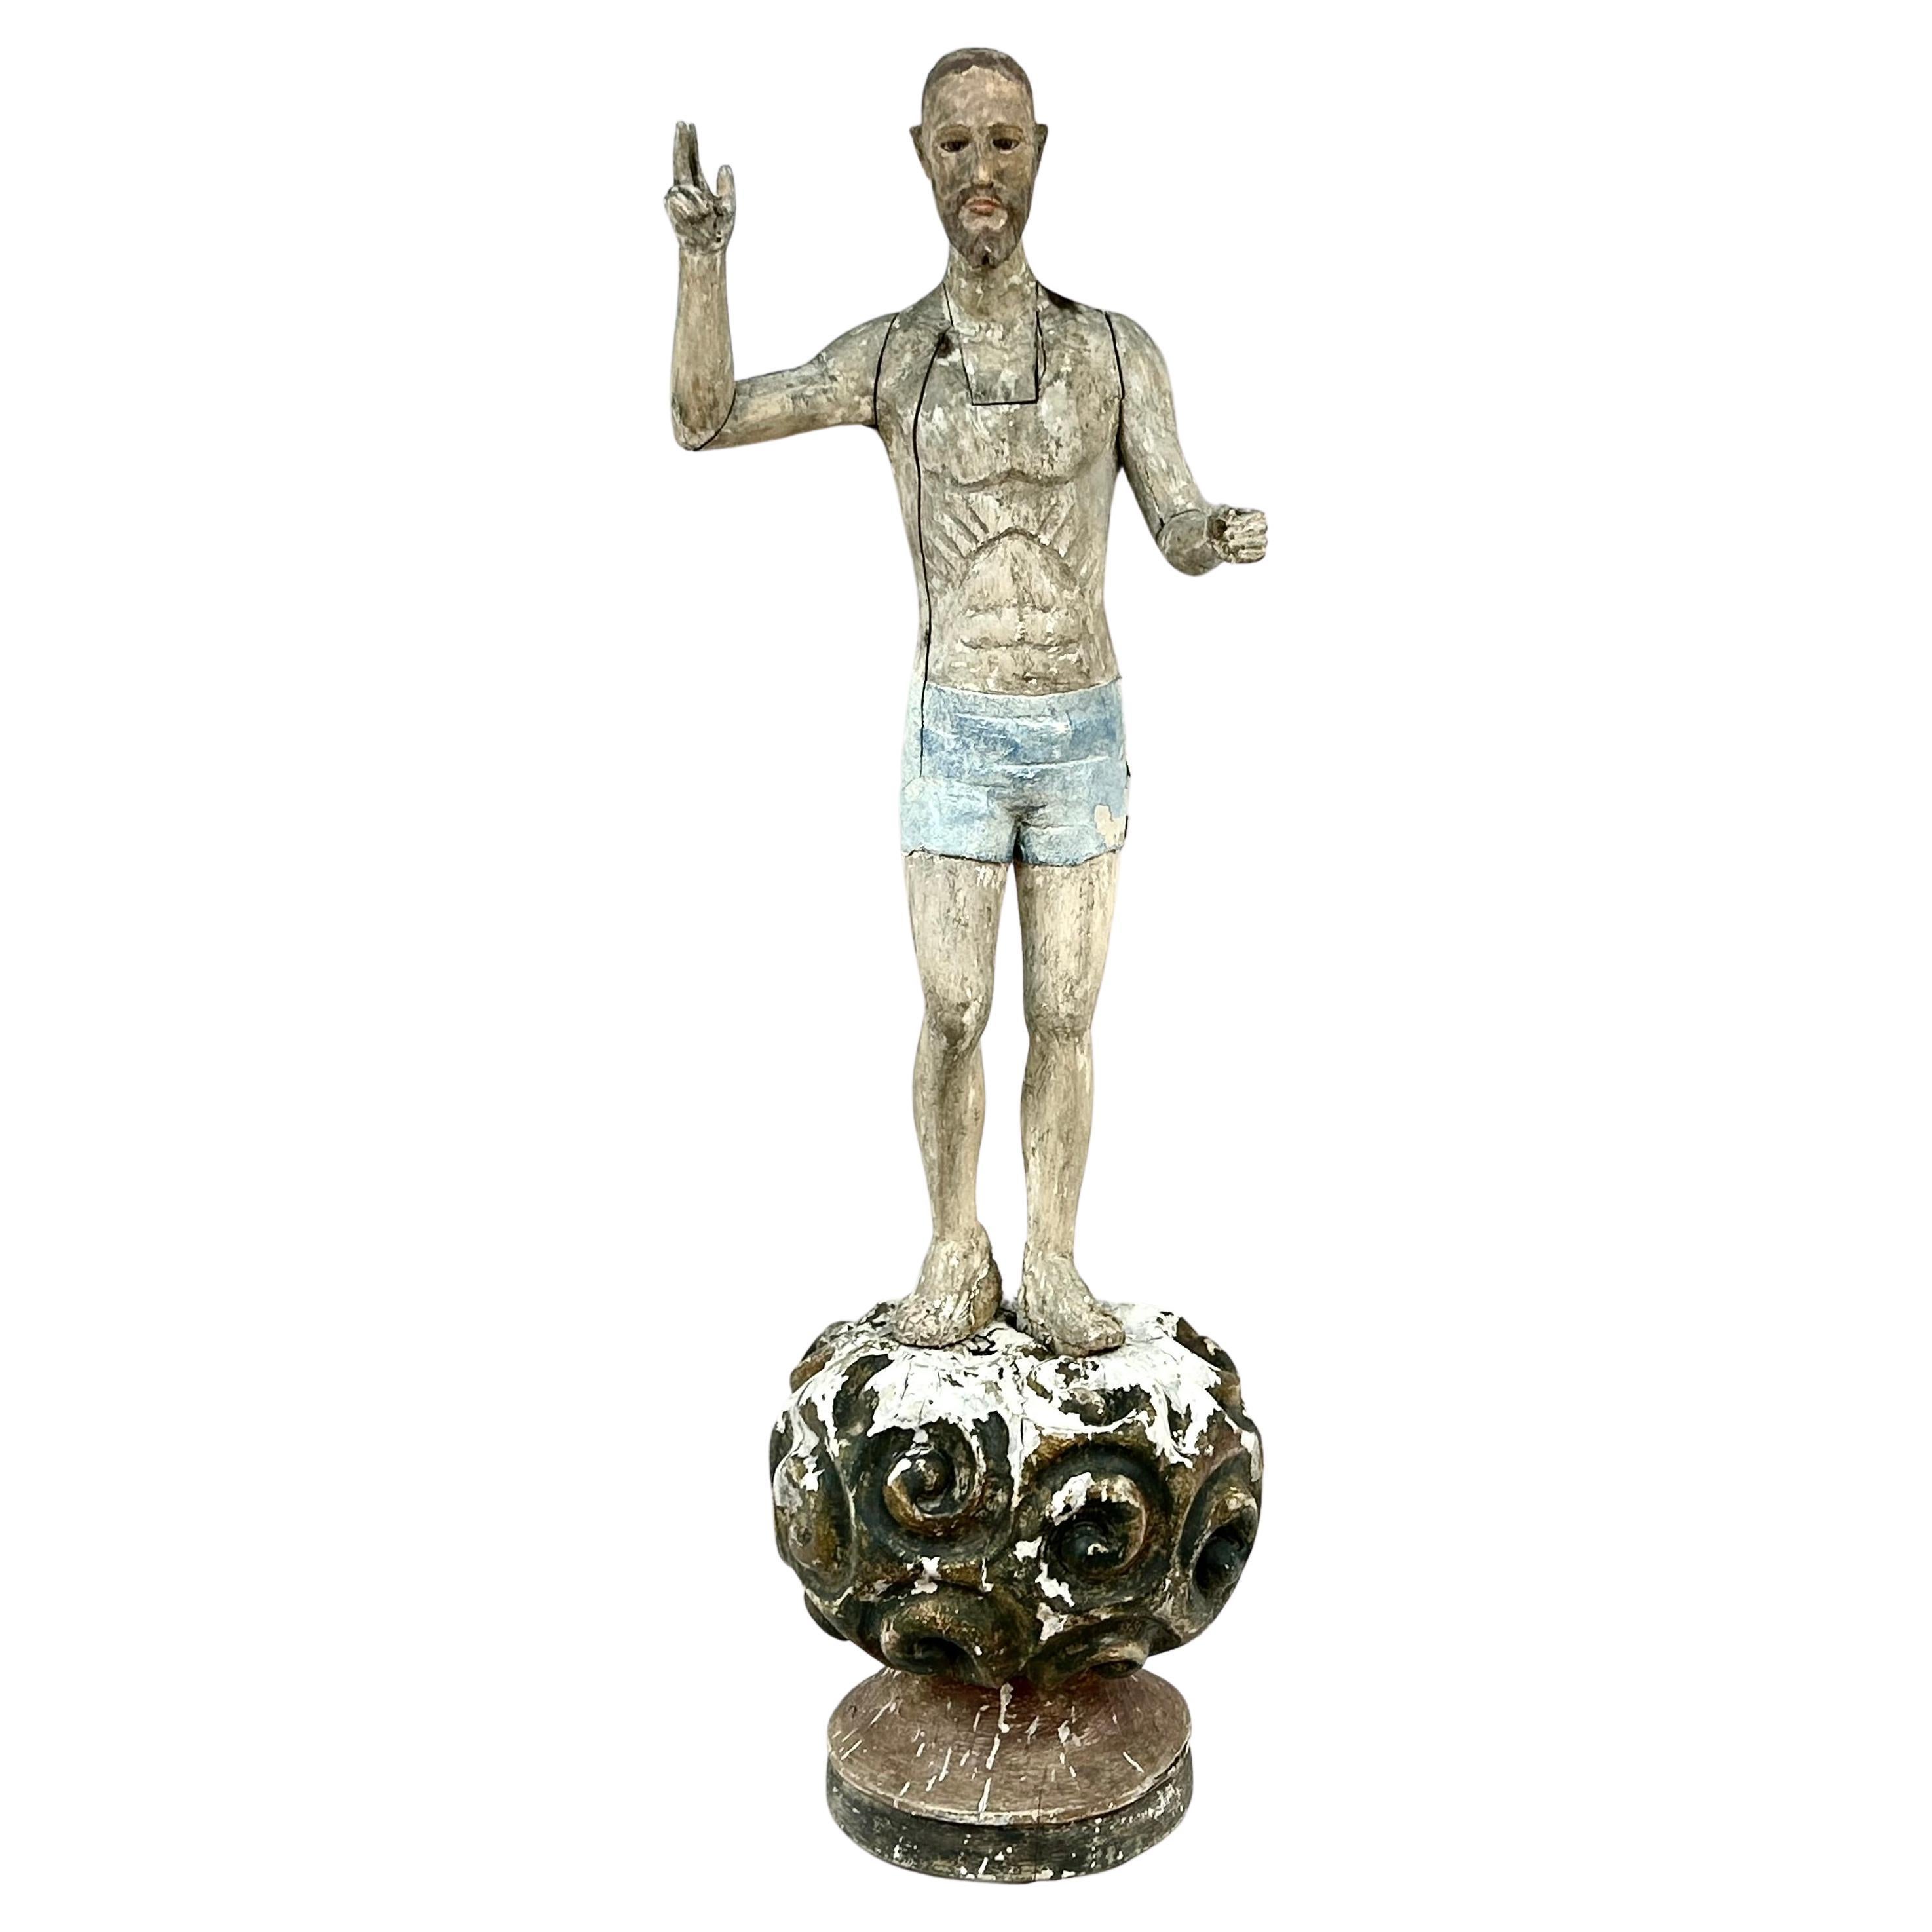 Religiöse Figur aus der spanischen Kolonialzeit des 19. Jahrhunderts  In geschnitztem und polychromiertem Holz